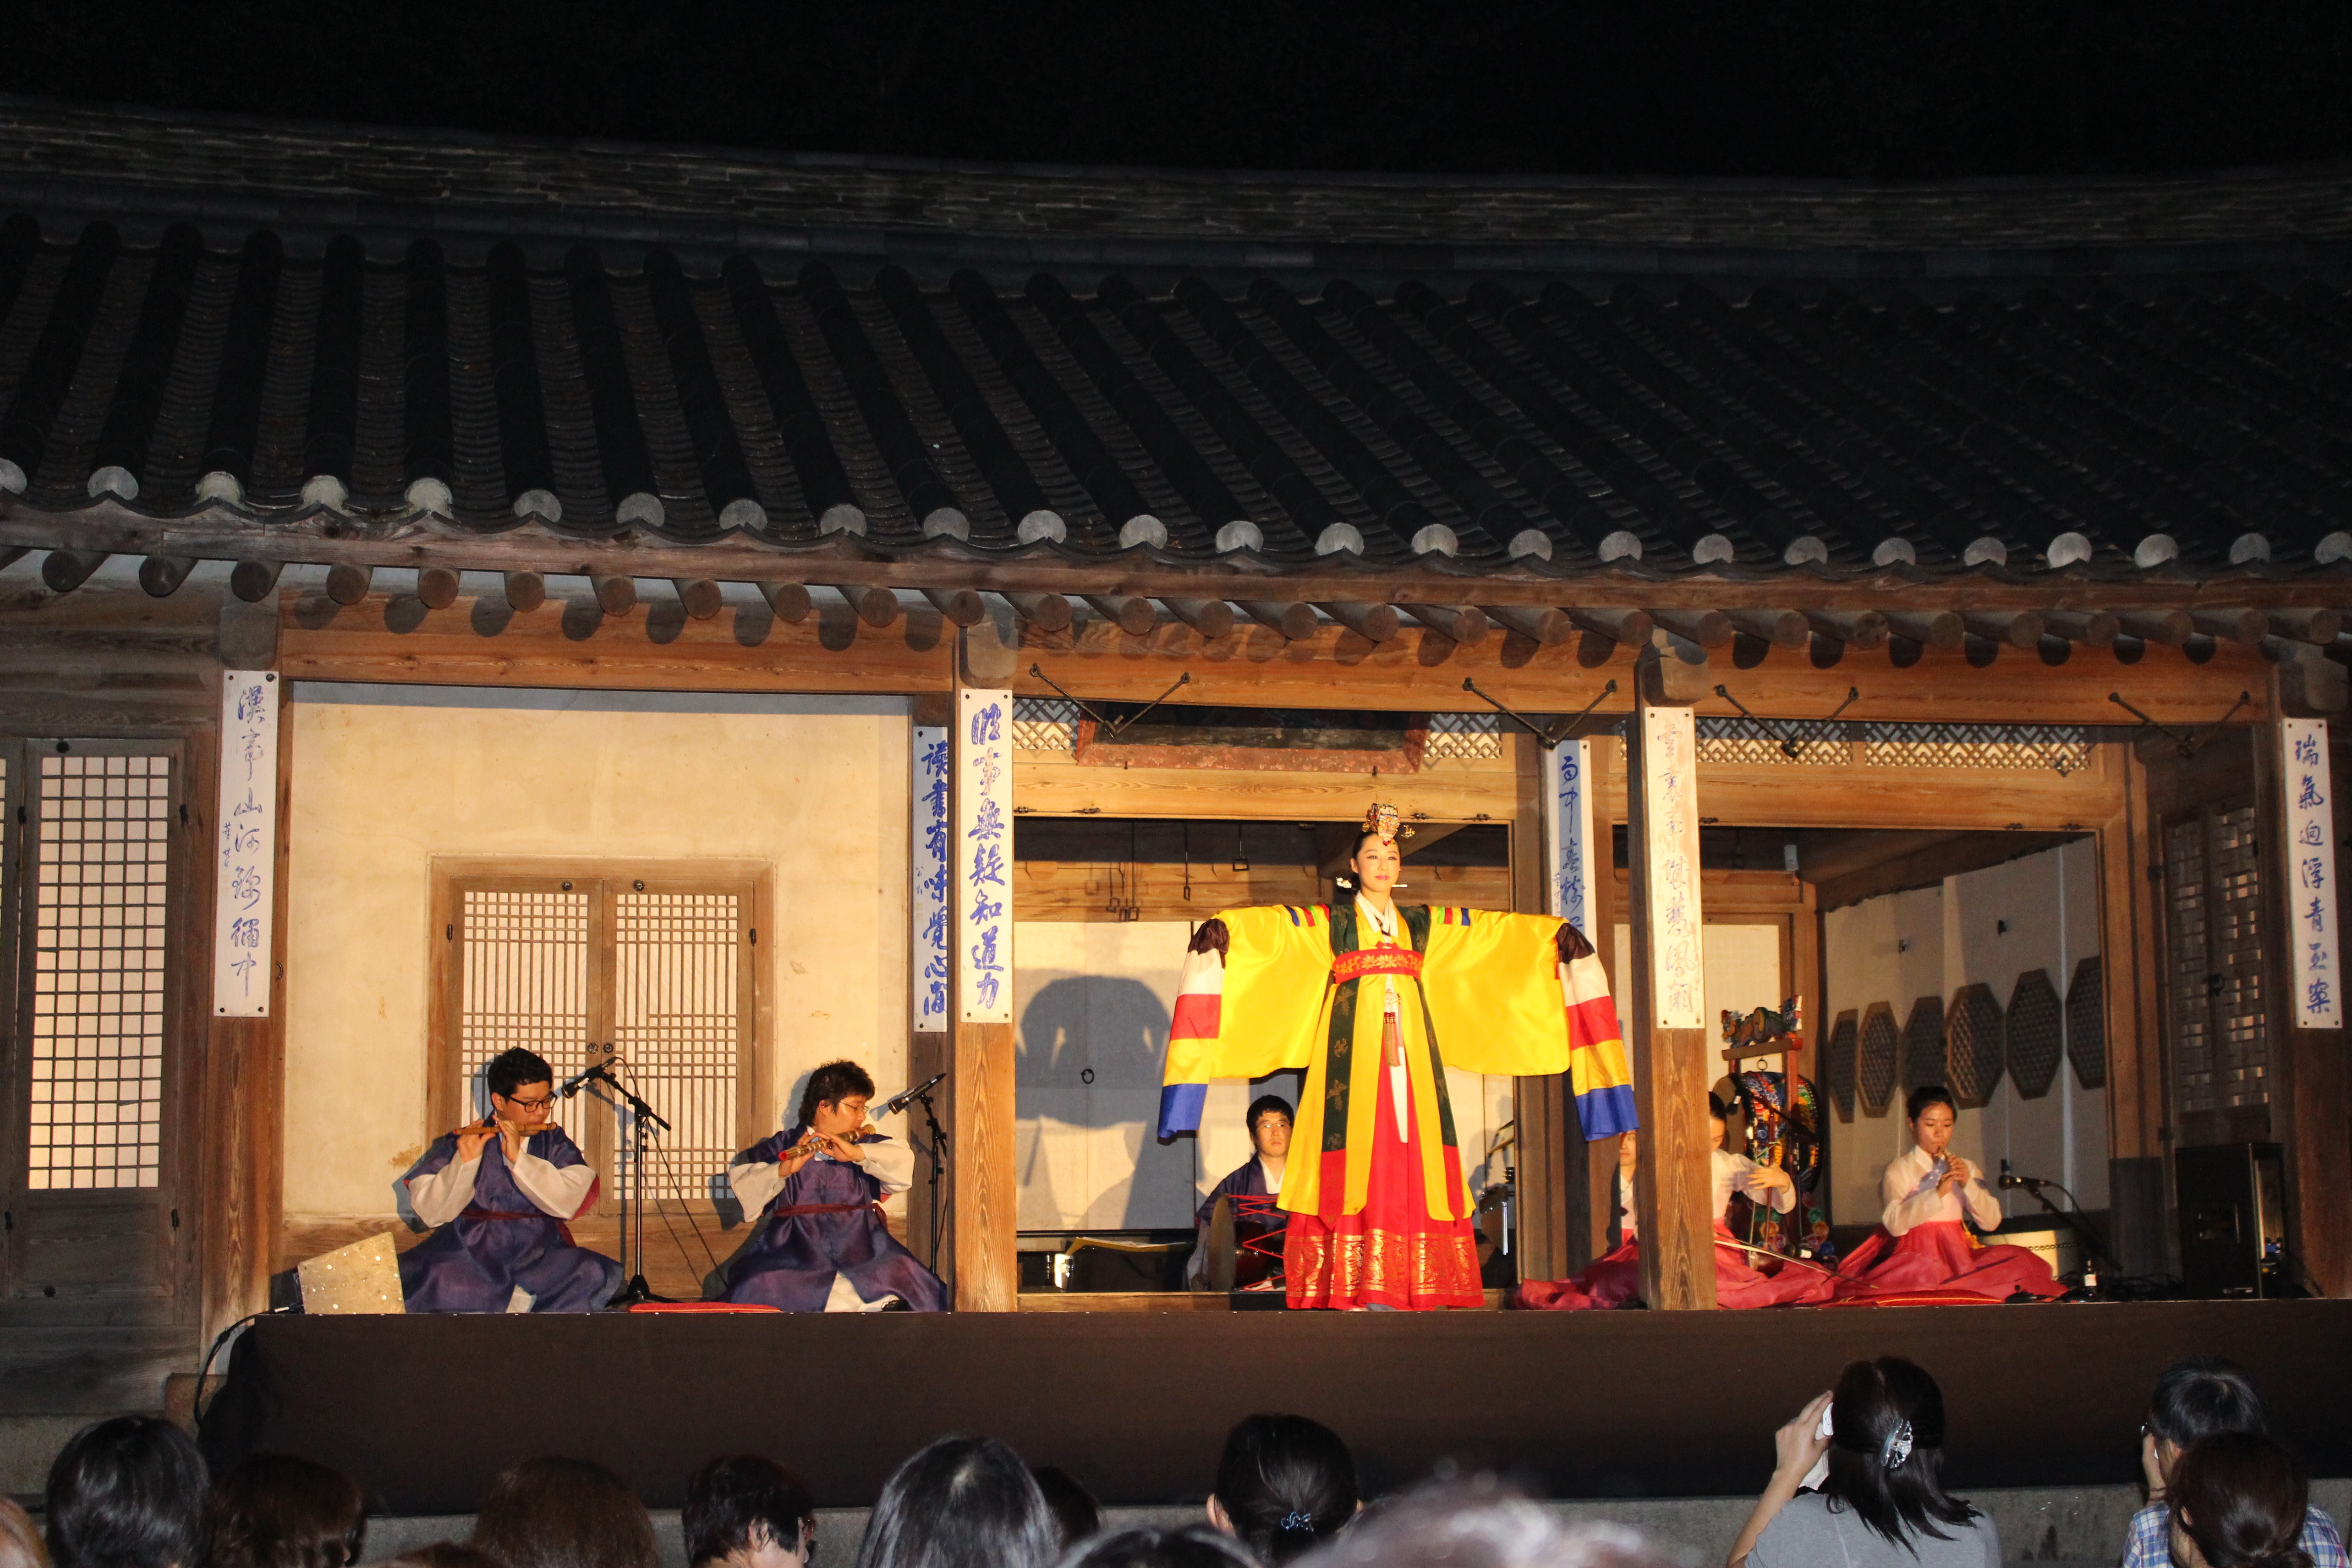 月光下的美丽宫殿之旅——韩国“昌德宫”月光之旅